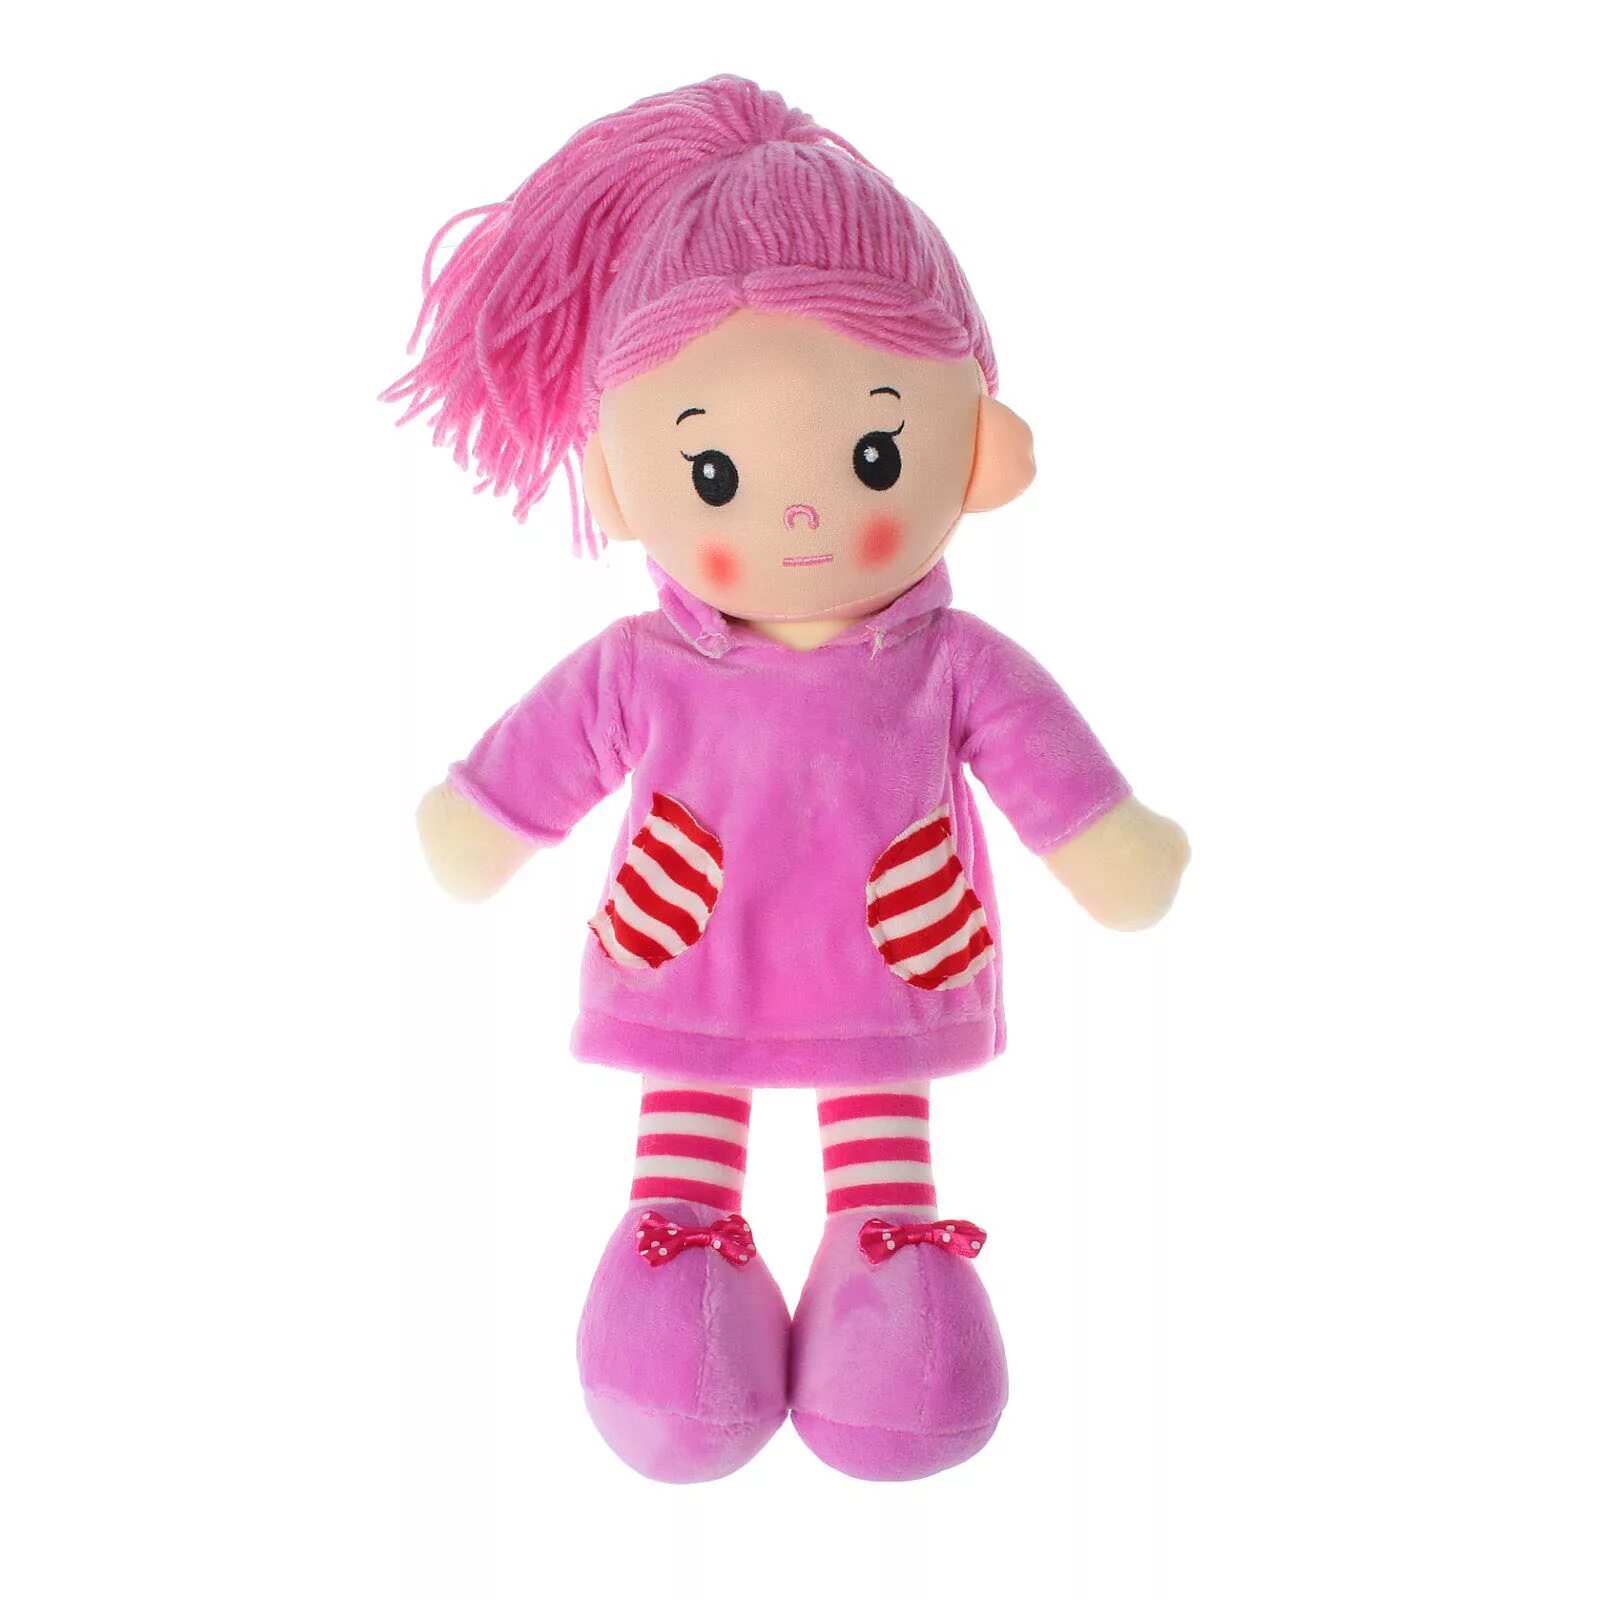 Мягкая кукла. Мягкая кукла для девочек. Игрушка мягконабивная кукла. Мягкая кукла с розовыми волосами.